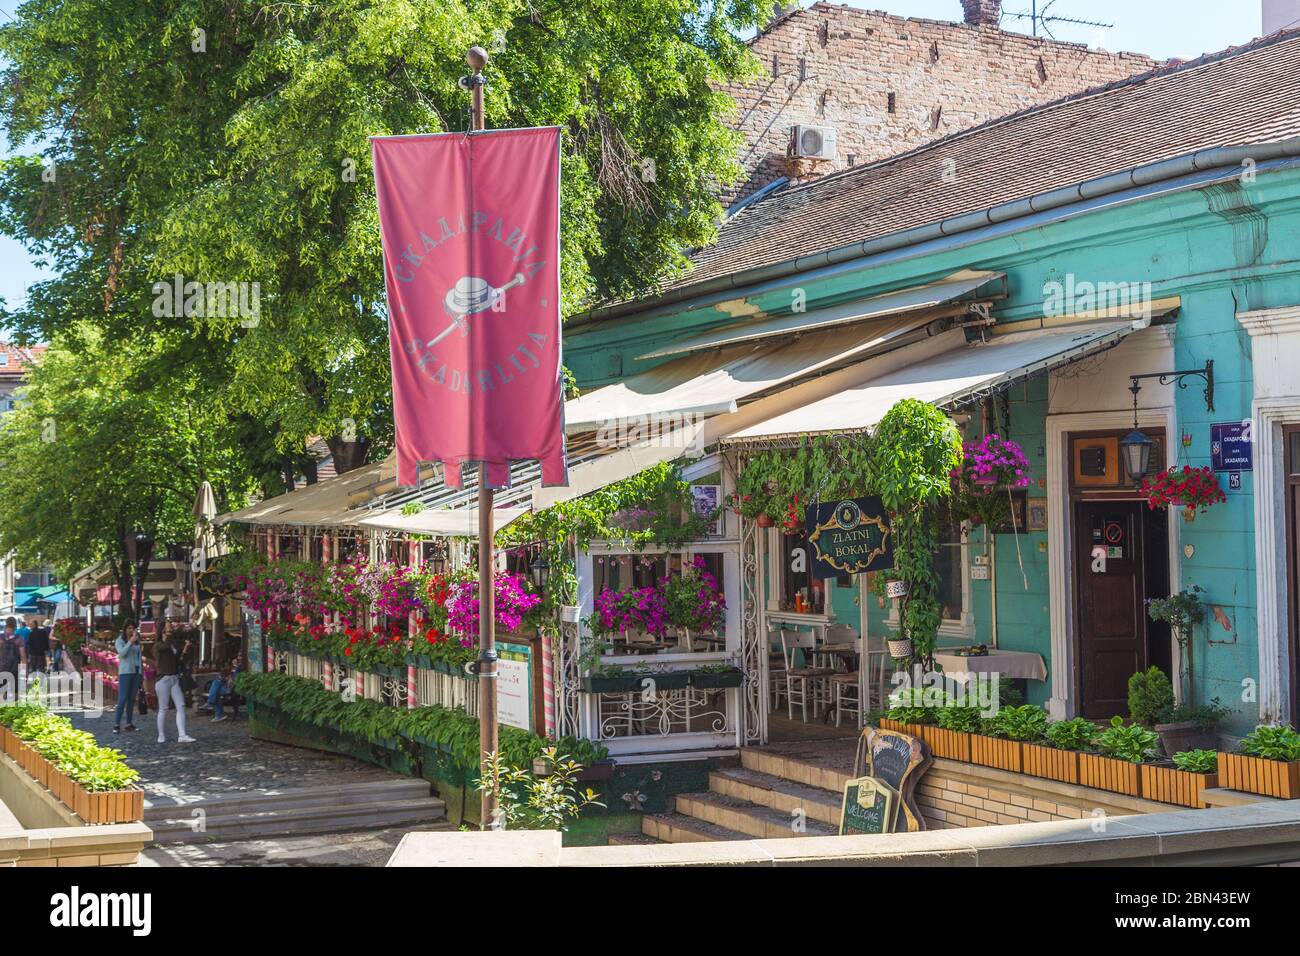 BELGRAD, SERBIEN - 8. MAI 2018: Blick auf Skadarlija (Straße) in Belgrad, ein beliebter Ort, um traditionelle serbische Küche in den vielen Restaurants zu probieren Stockfoto